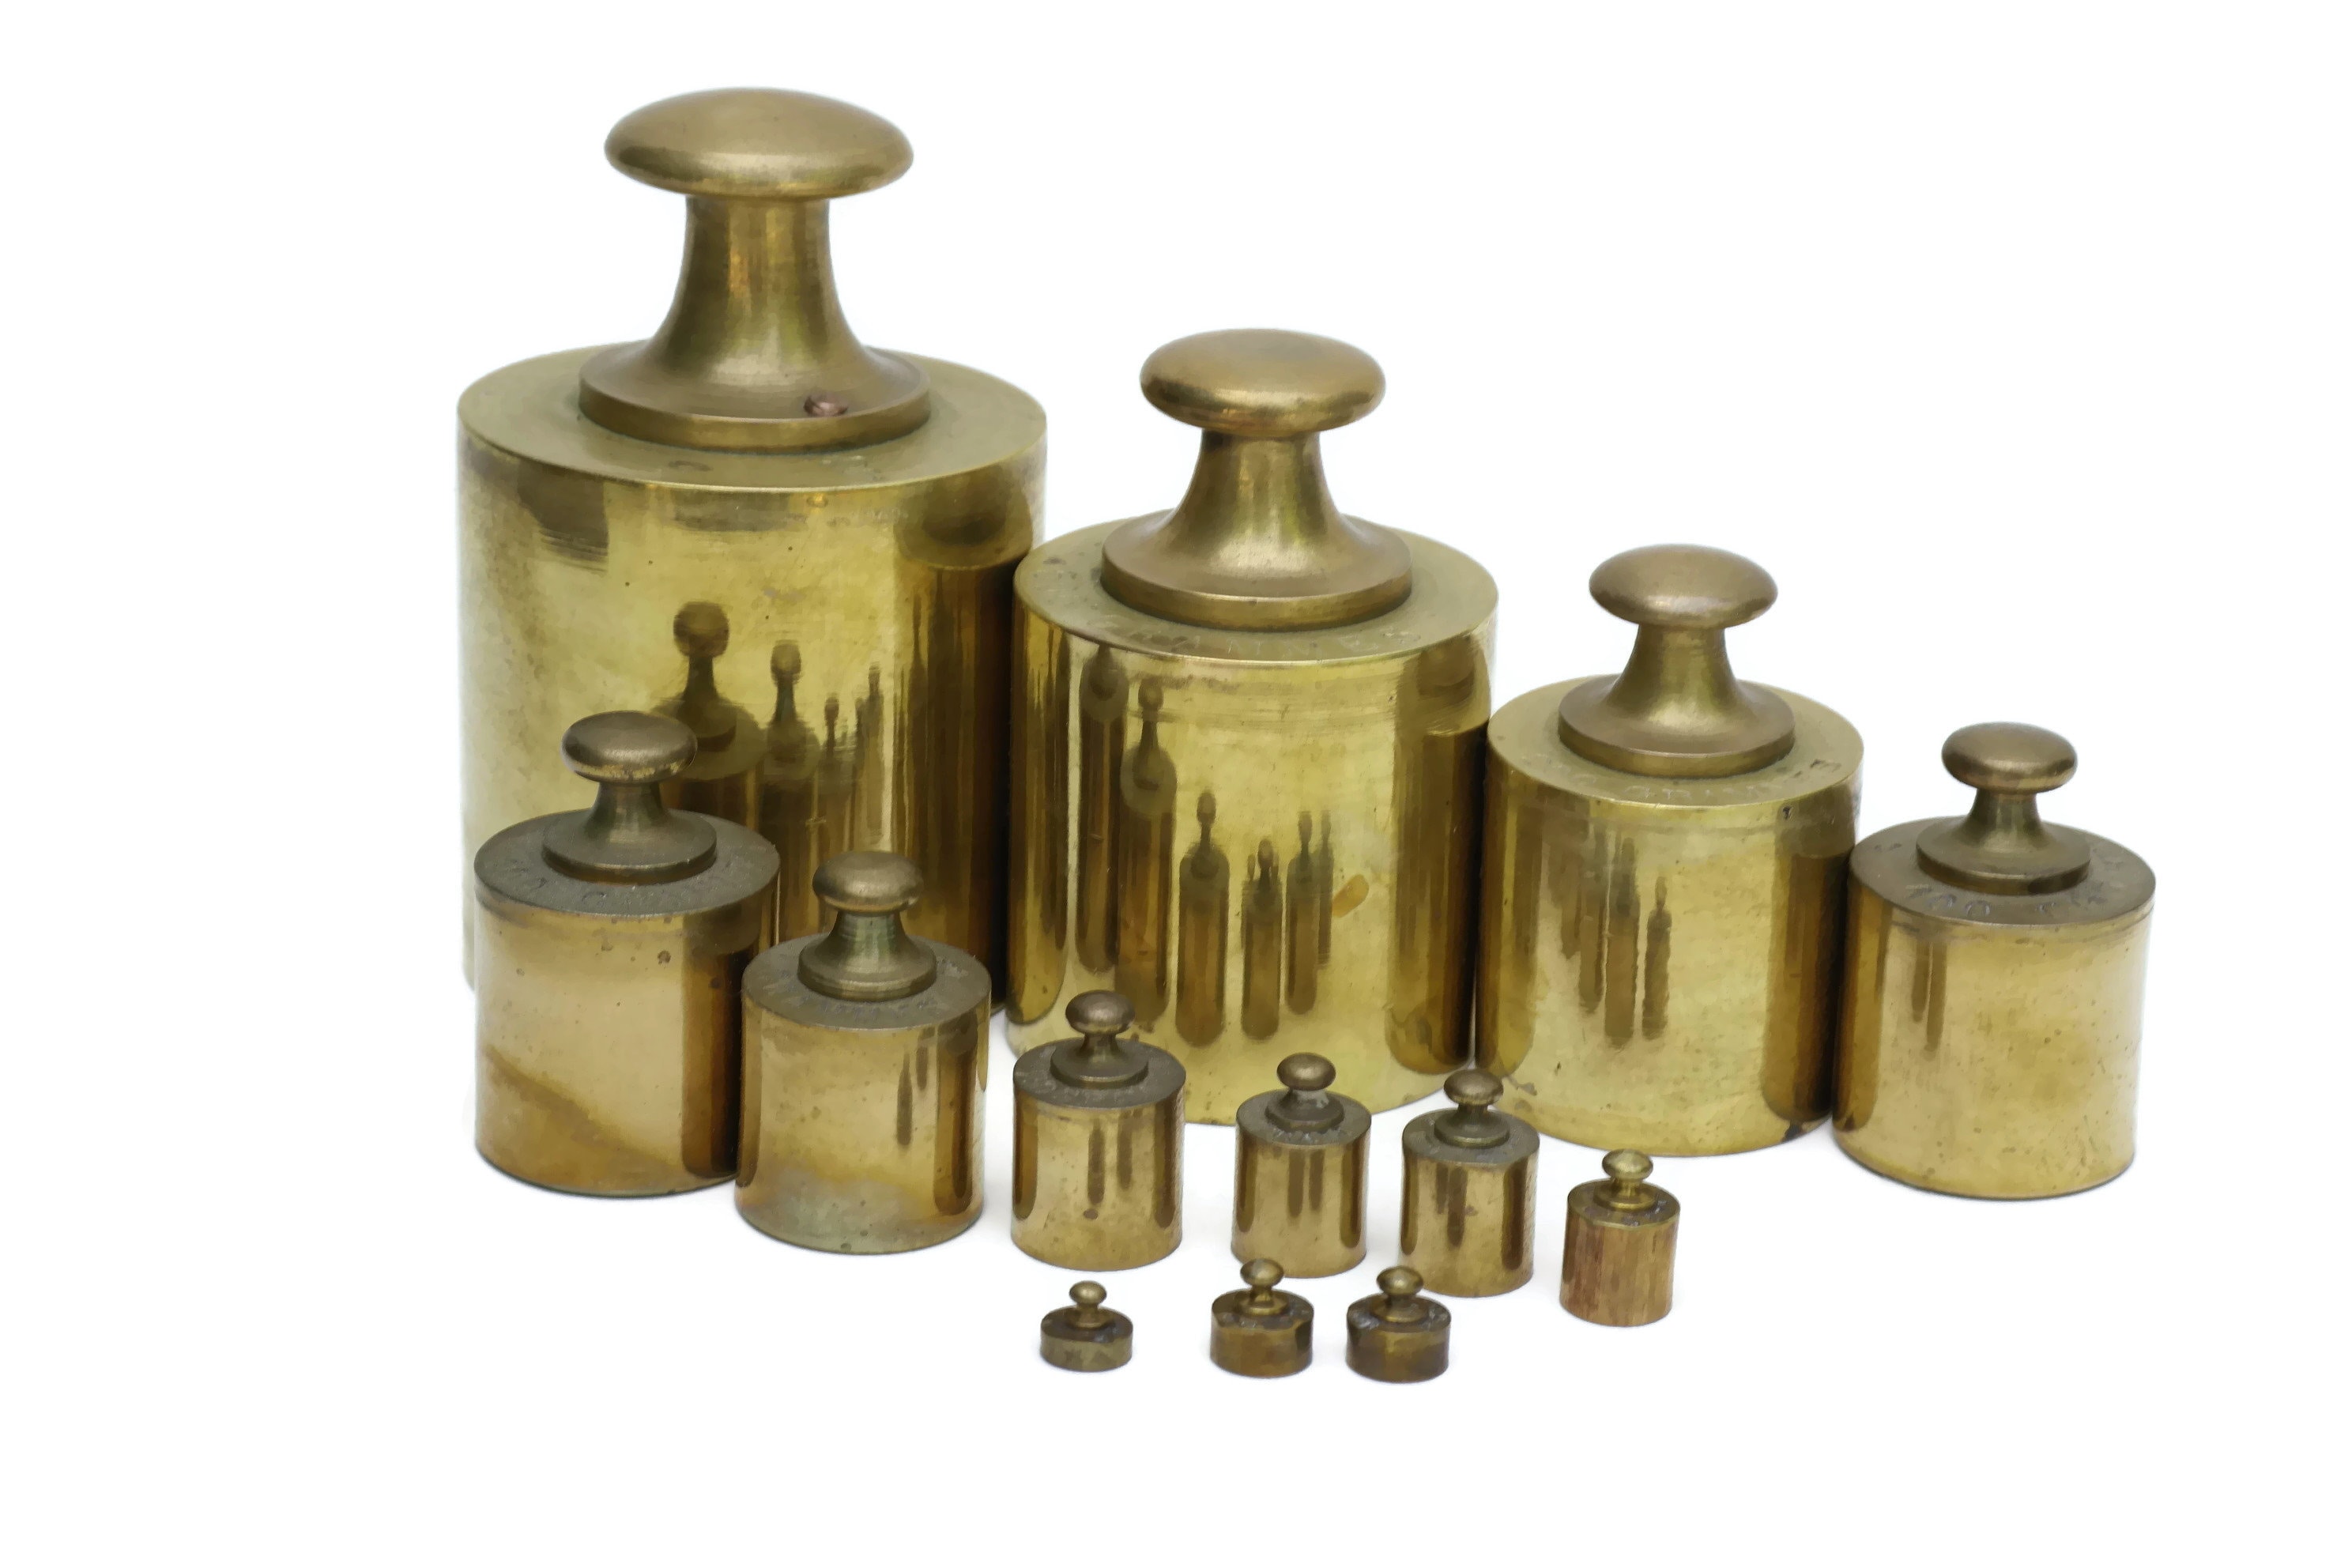 Antique Victorian Brass British Postal Scales & Weights, Complete Set